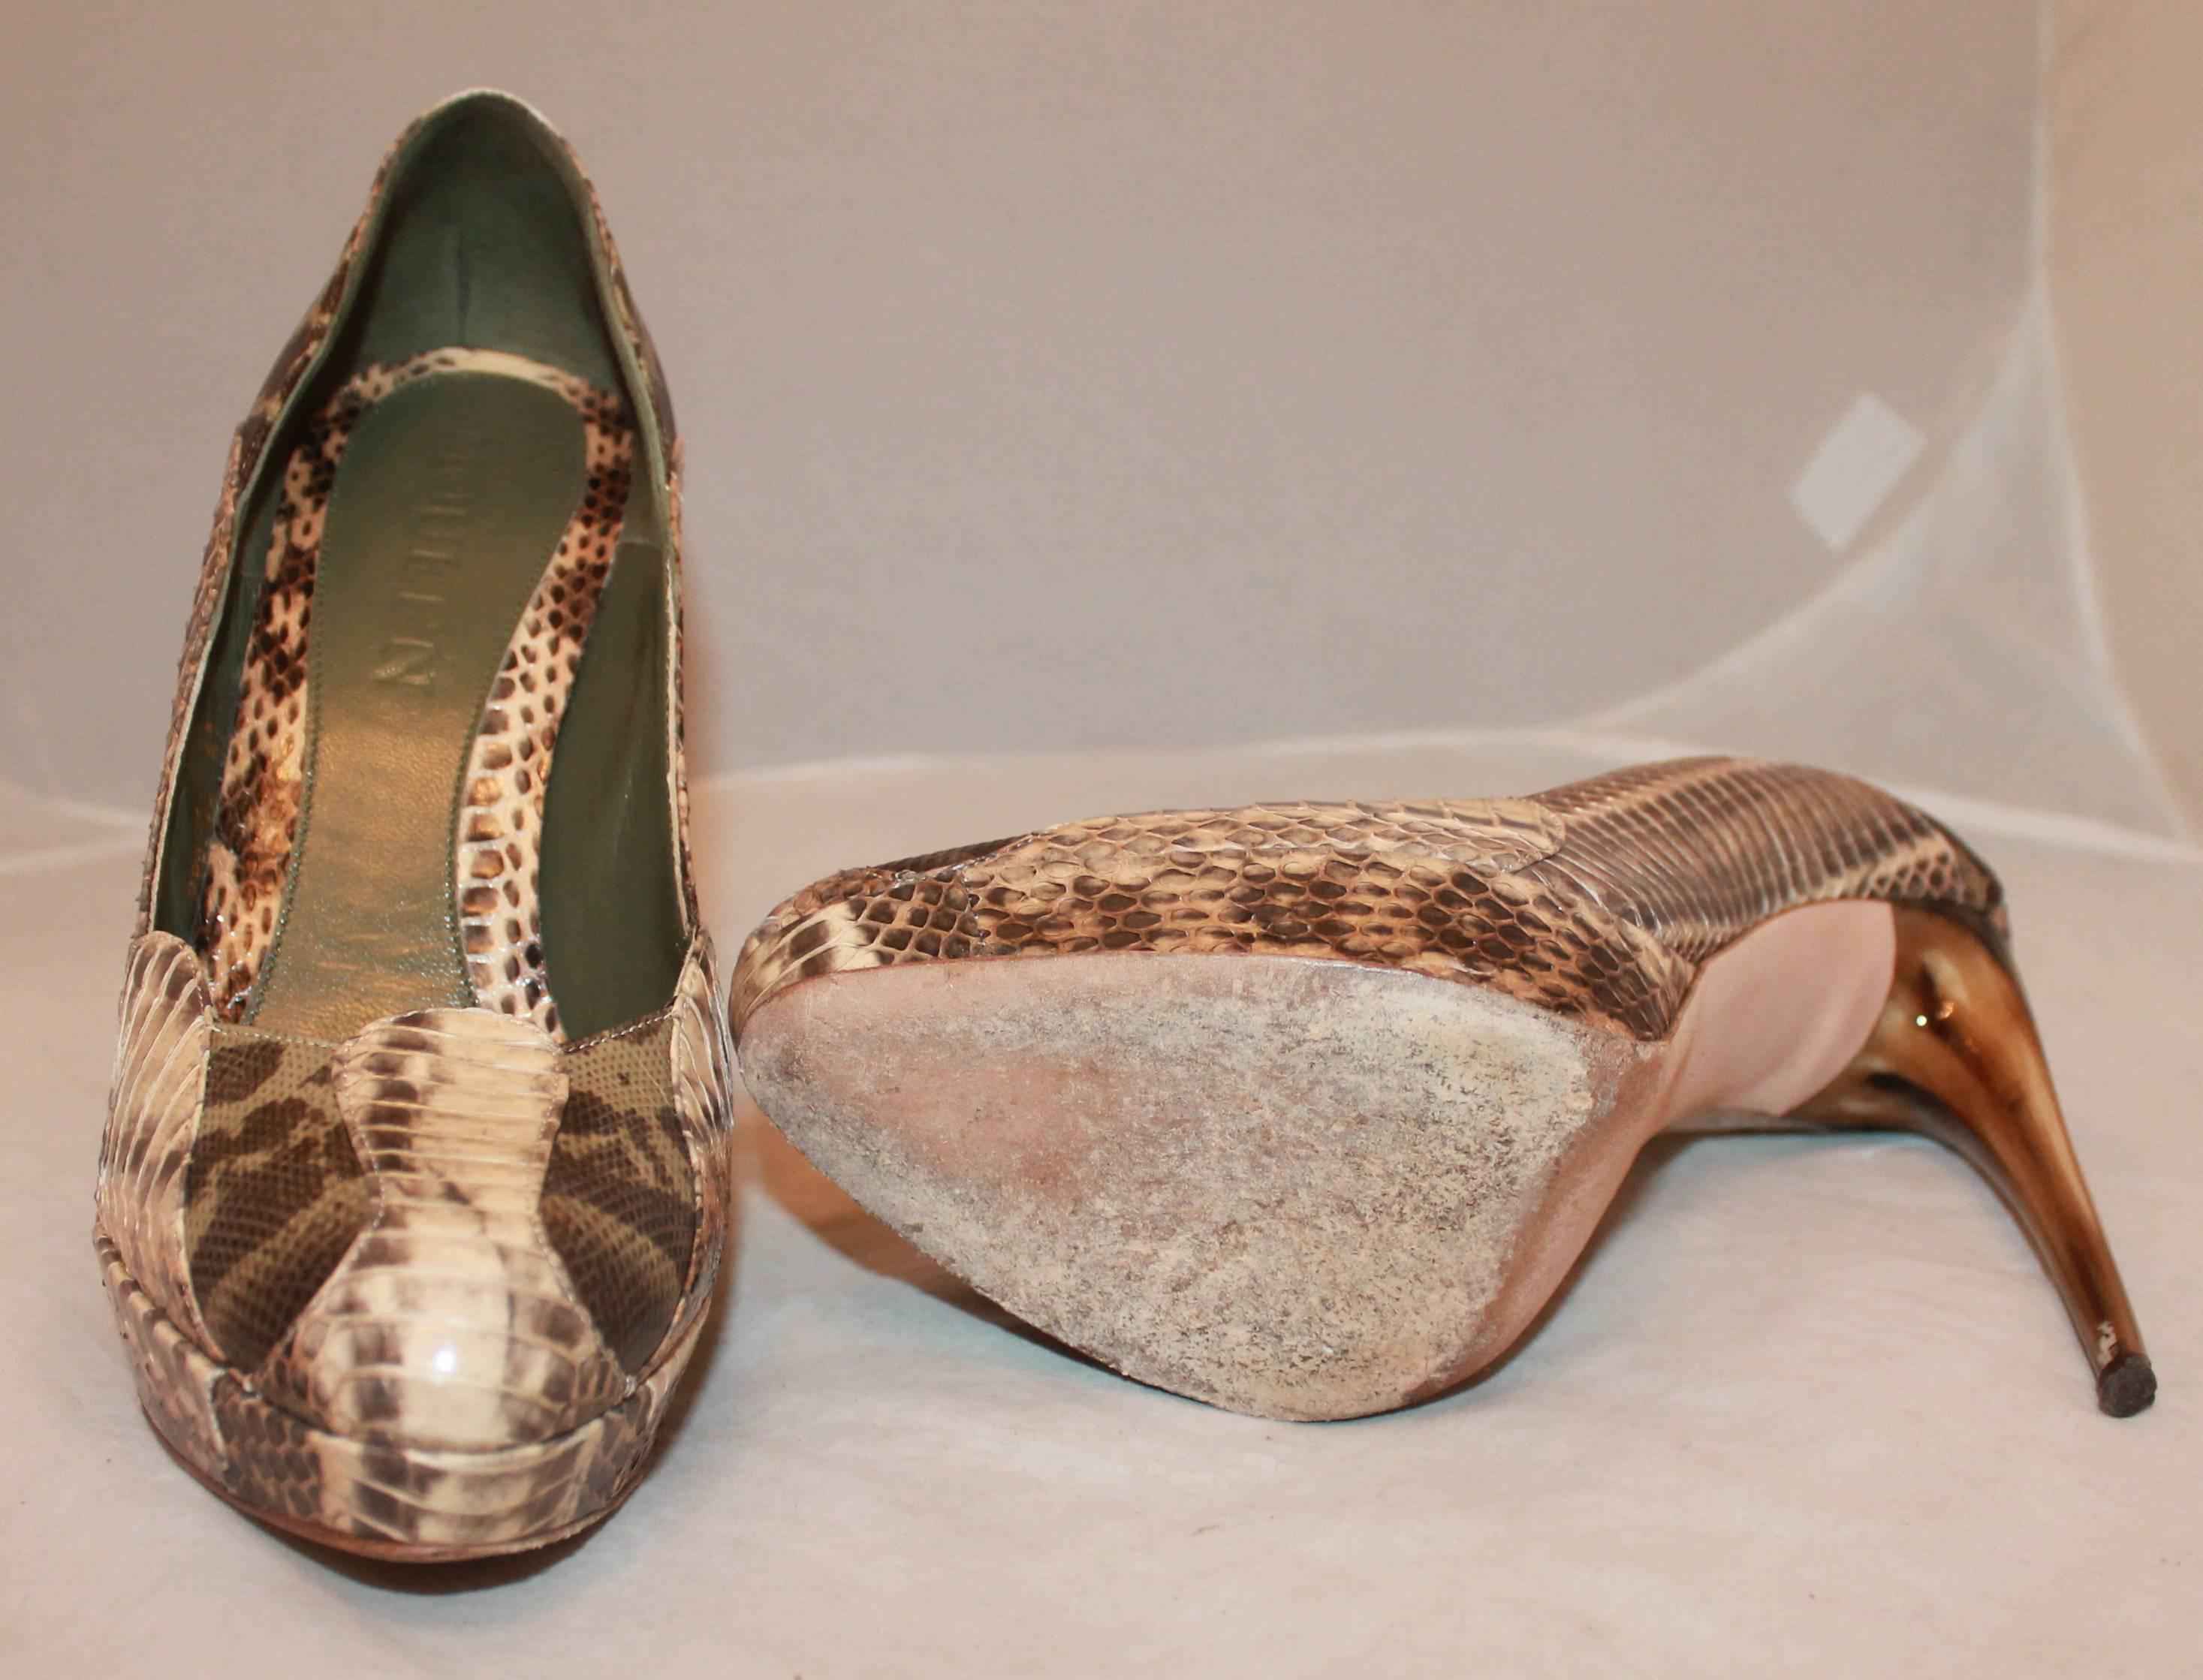 Alexander McQueen Earthtone Snake Skin & Lizard Patchwork Pumps - 41 2